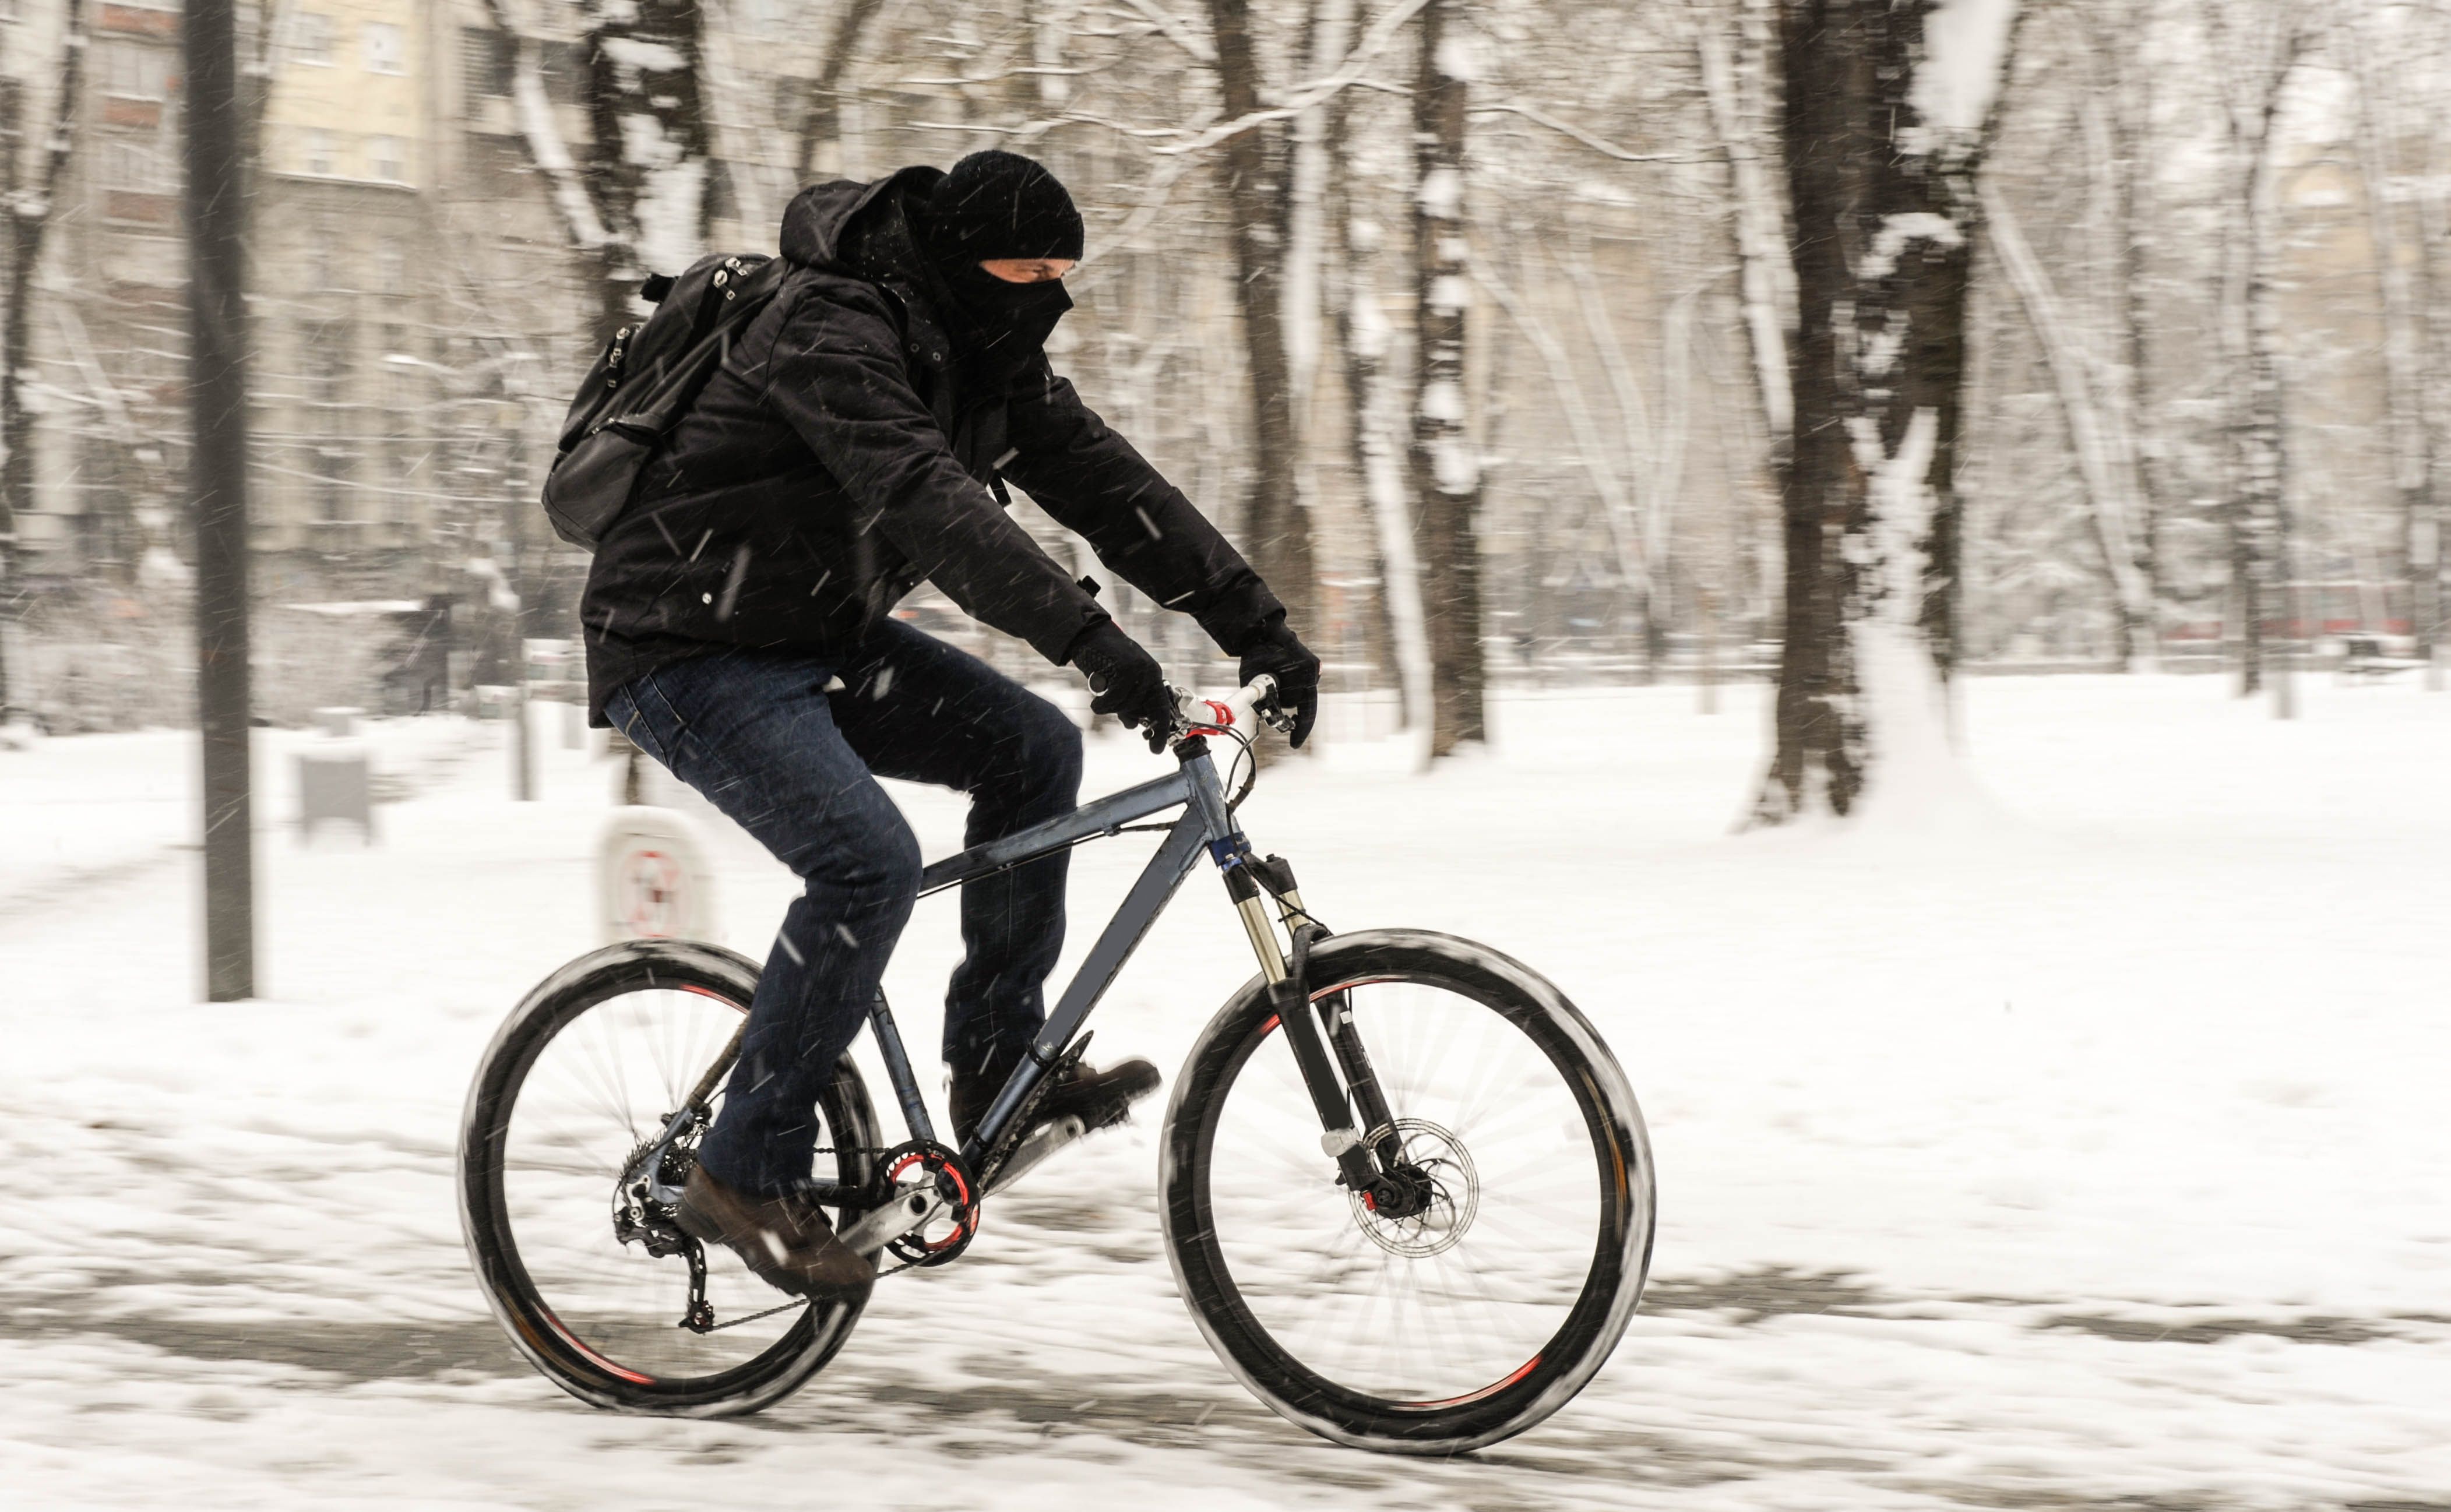 biking winter gear